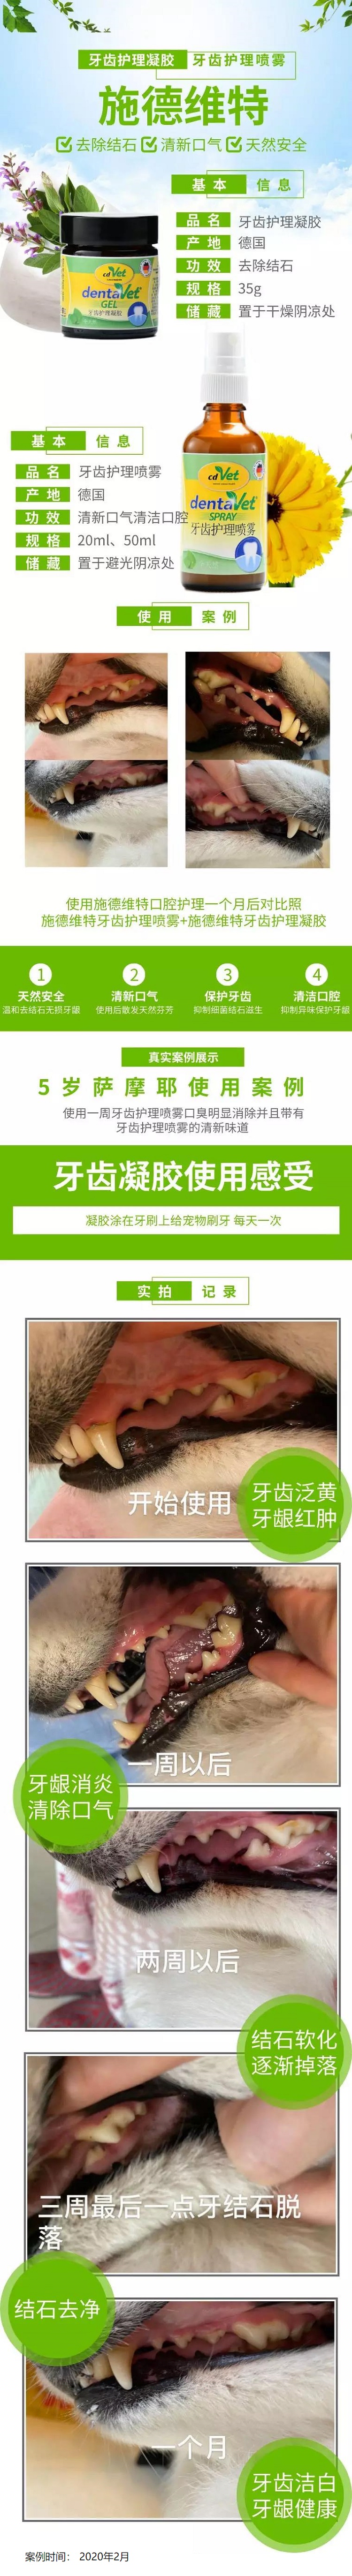 牙齿护理 案例.jpg